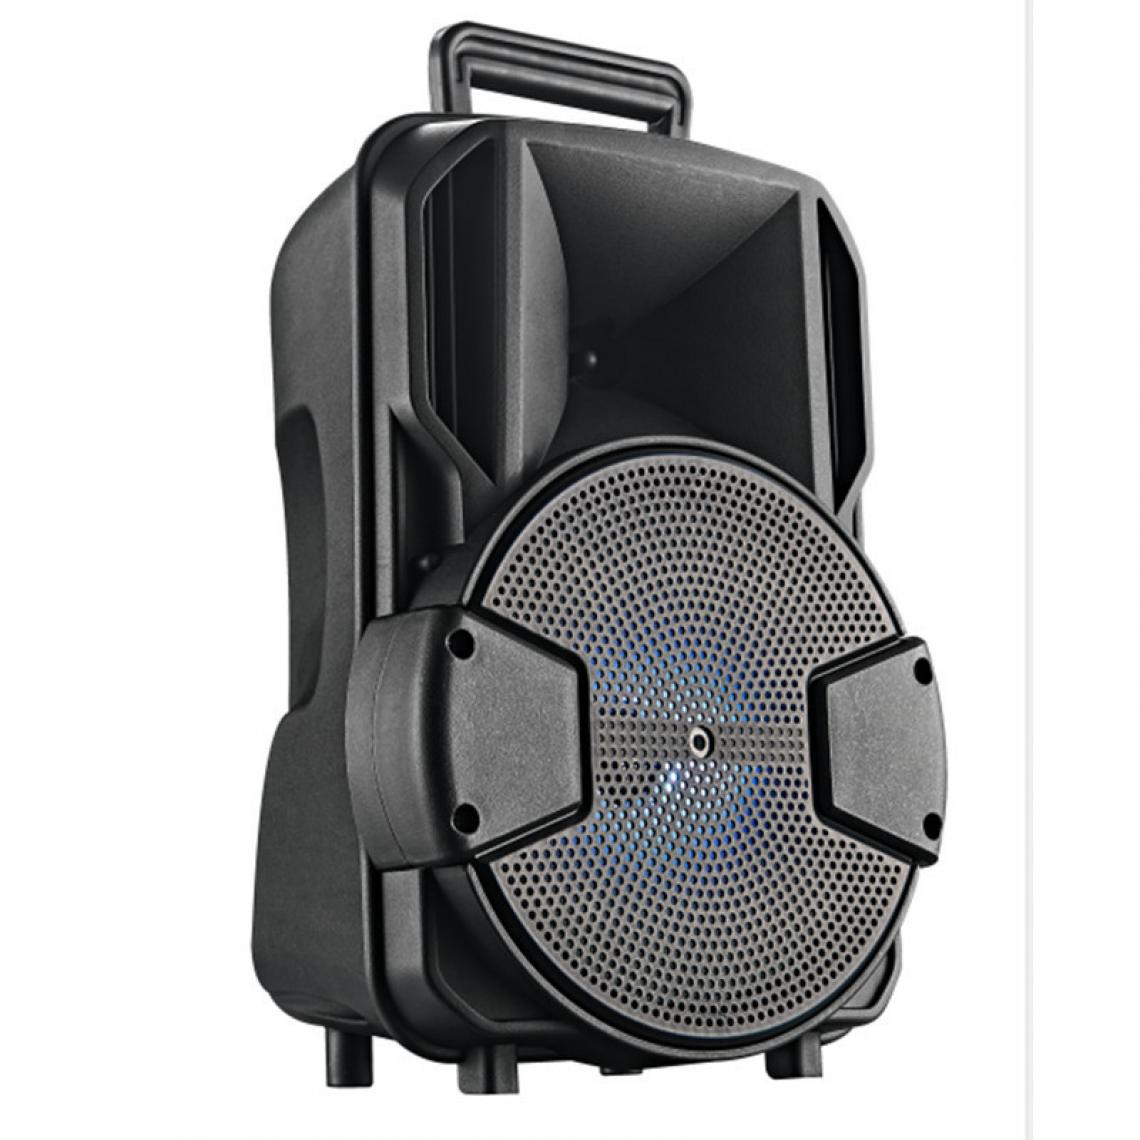 Universal - Haut-parleur Bluetooth portable avec microphone imperméable extérieur sans fil musique stéréo subwoofer HiFi support sonore FM TF AUX | Haut-parleur extérieur (noir) - Hauts-parleurs